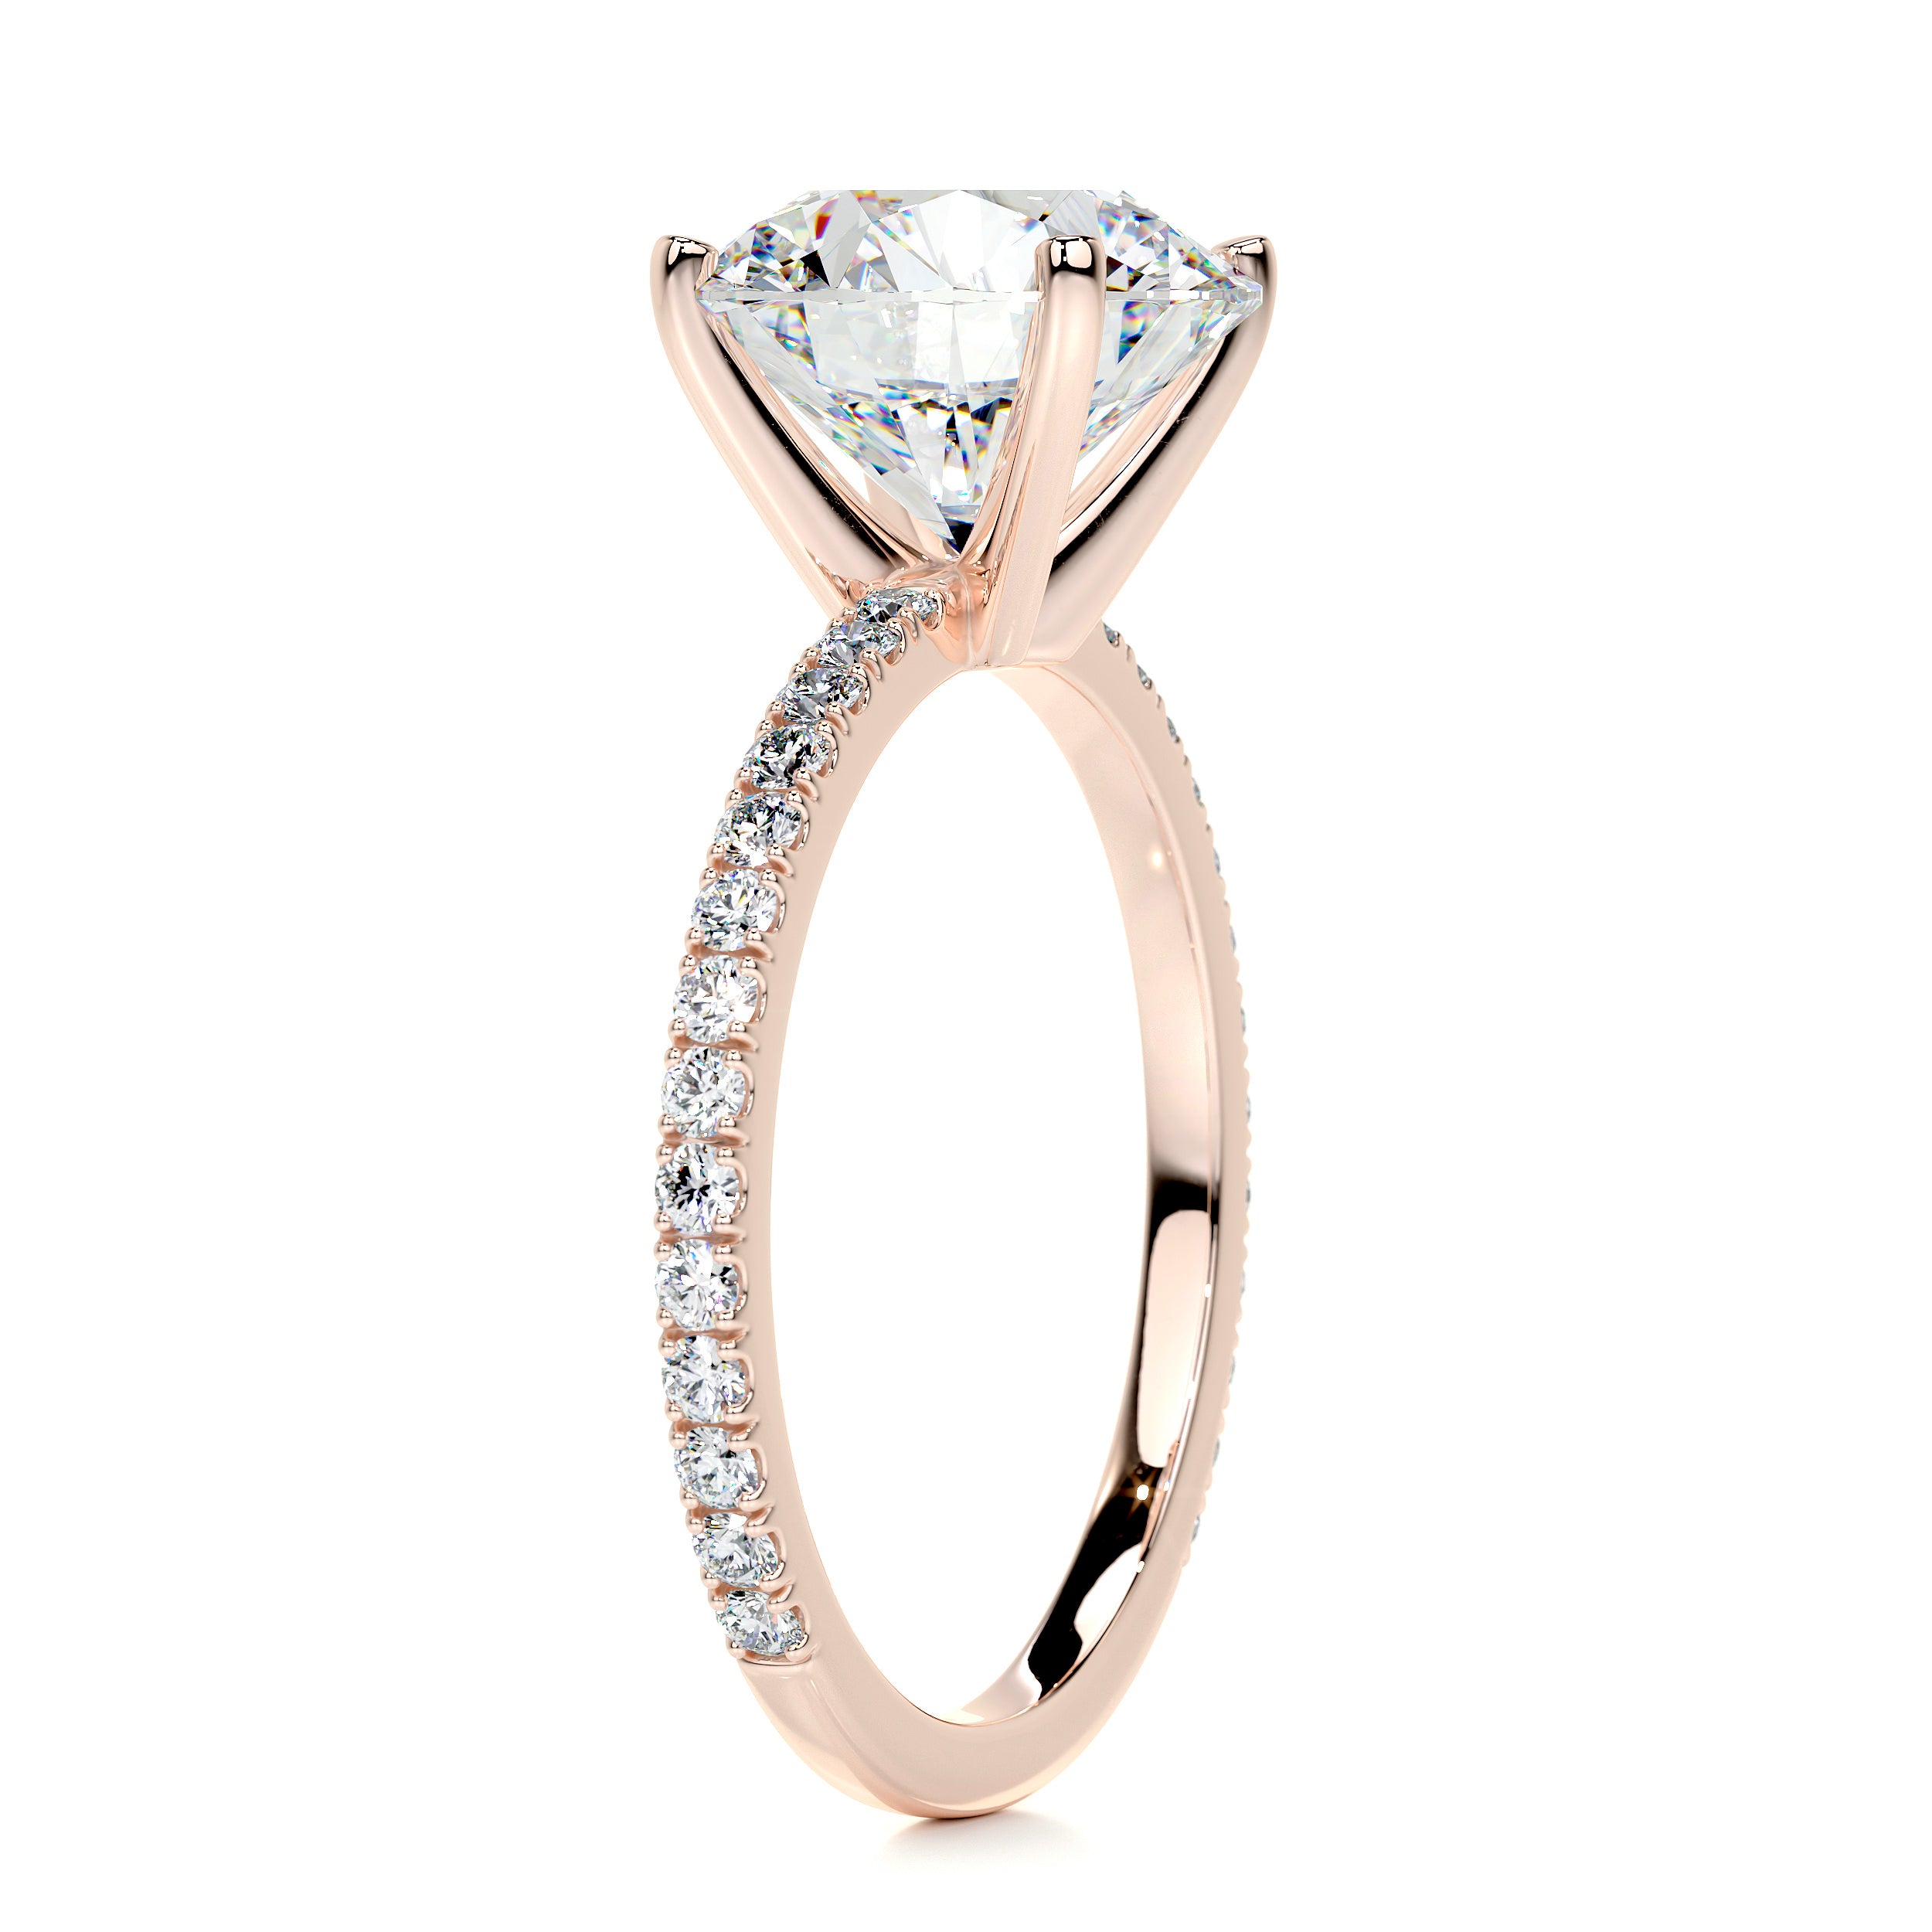 Stephanie Moissanite & Diamonds Ring -14K Rose Gold